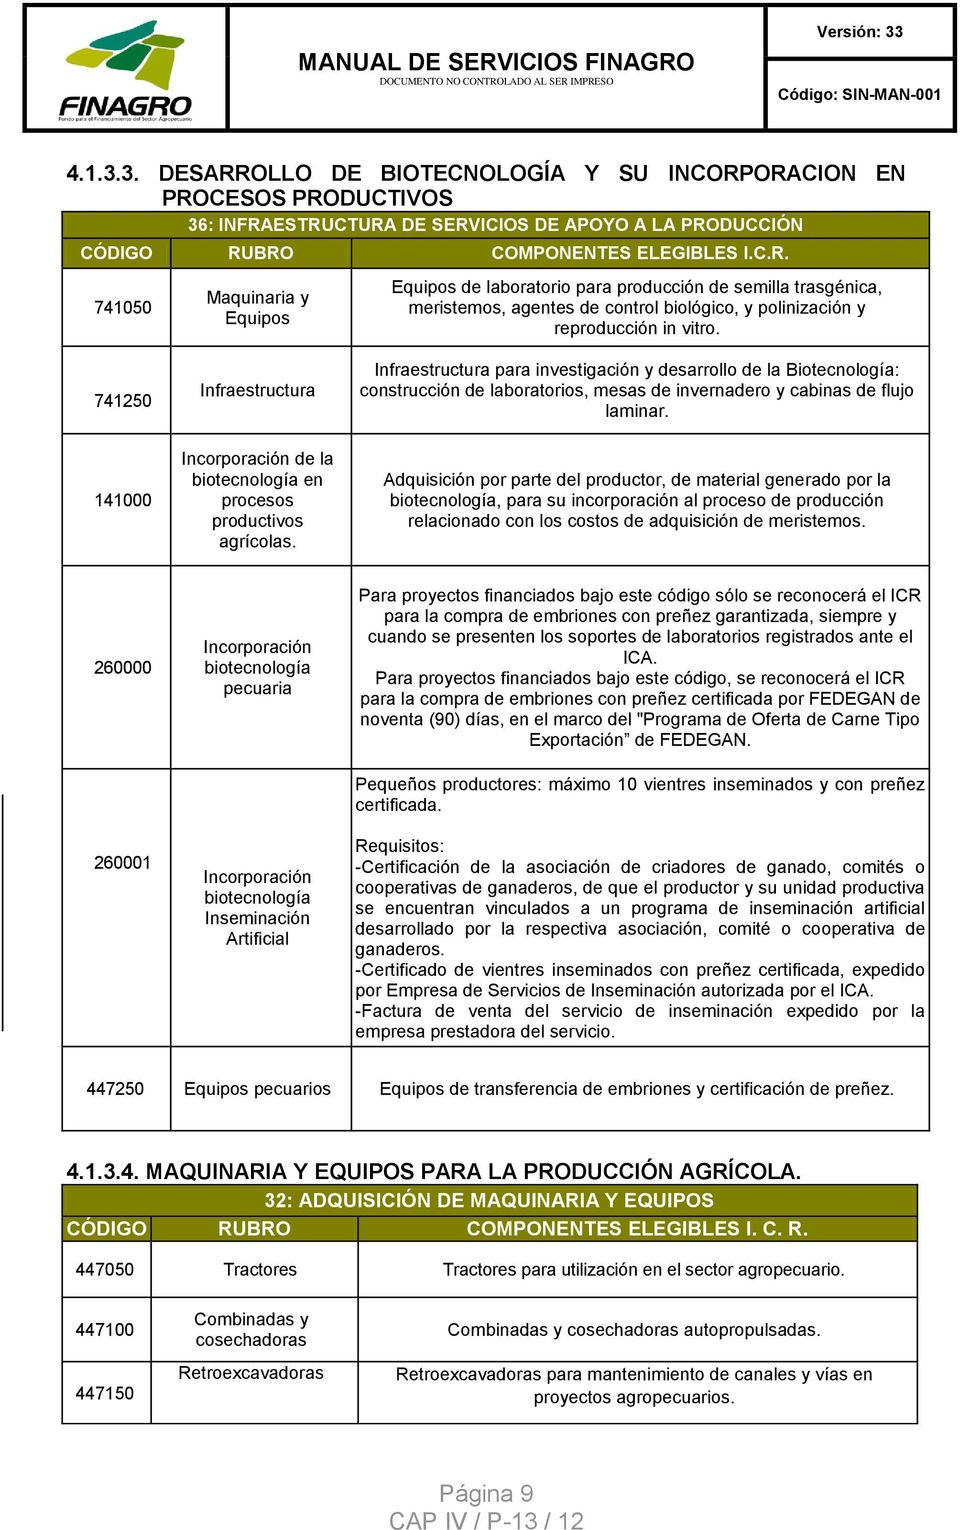 141000 Incorporación de la biotecnología en procesos productivos agrícolas.